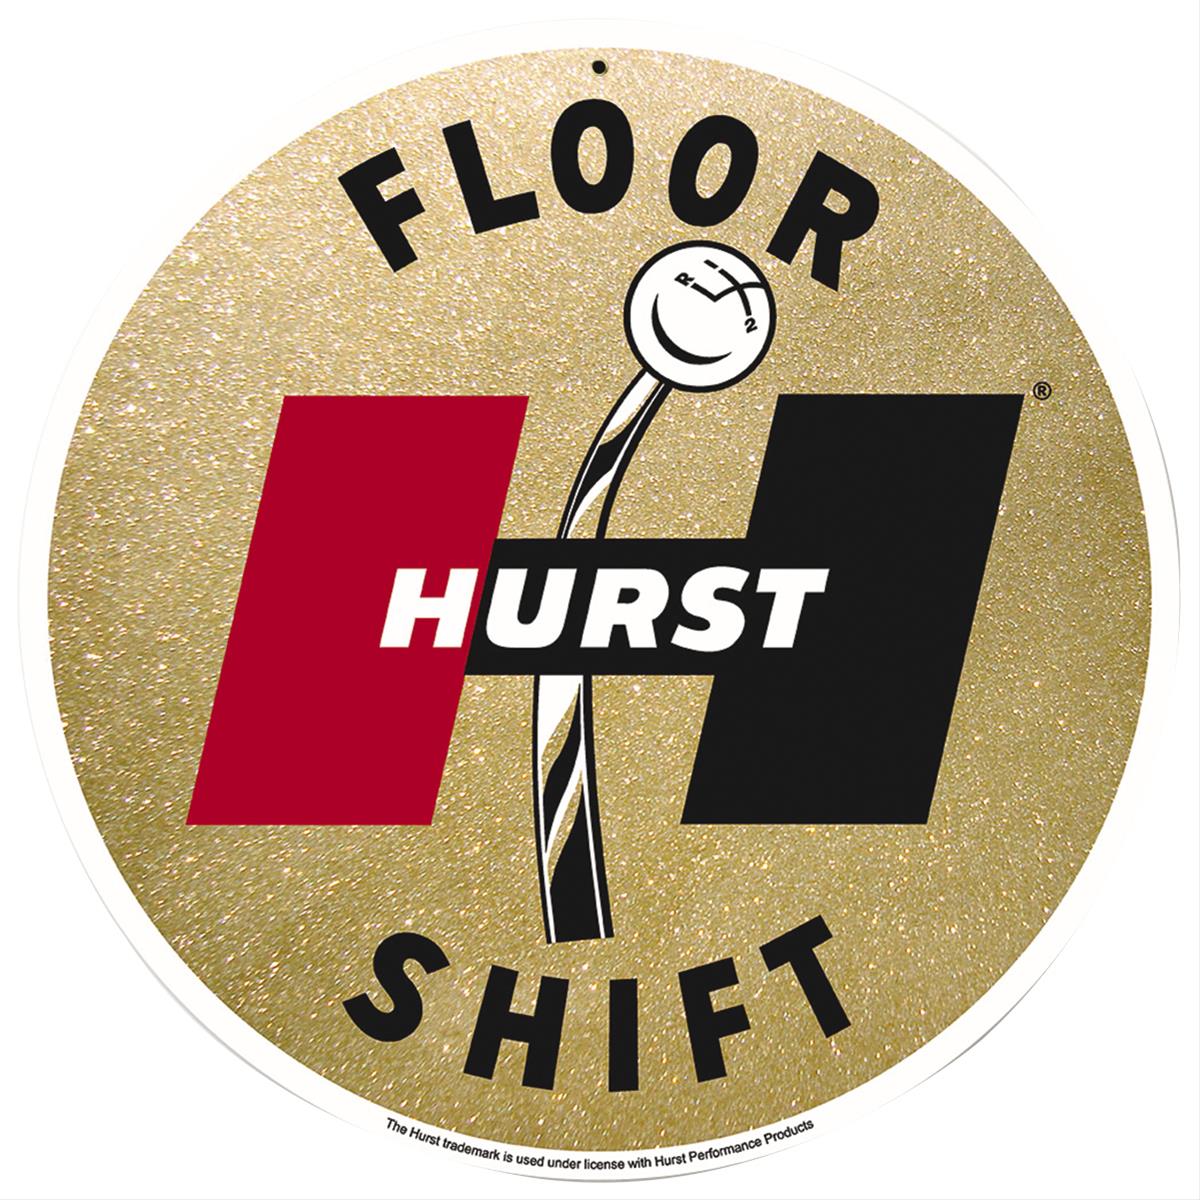 Hurst Floor Shift Steel Sign Bbt 052 Ebay